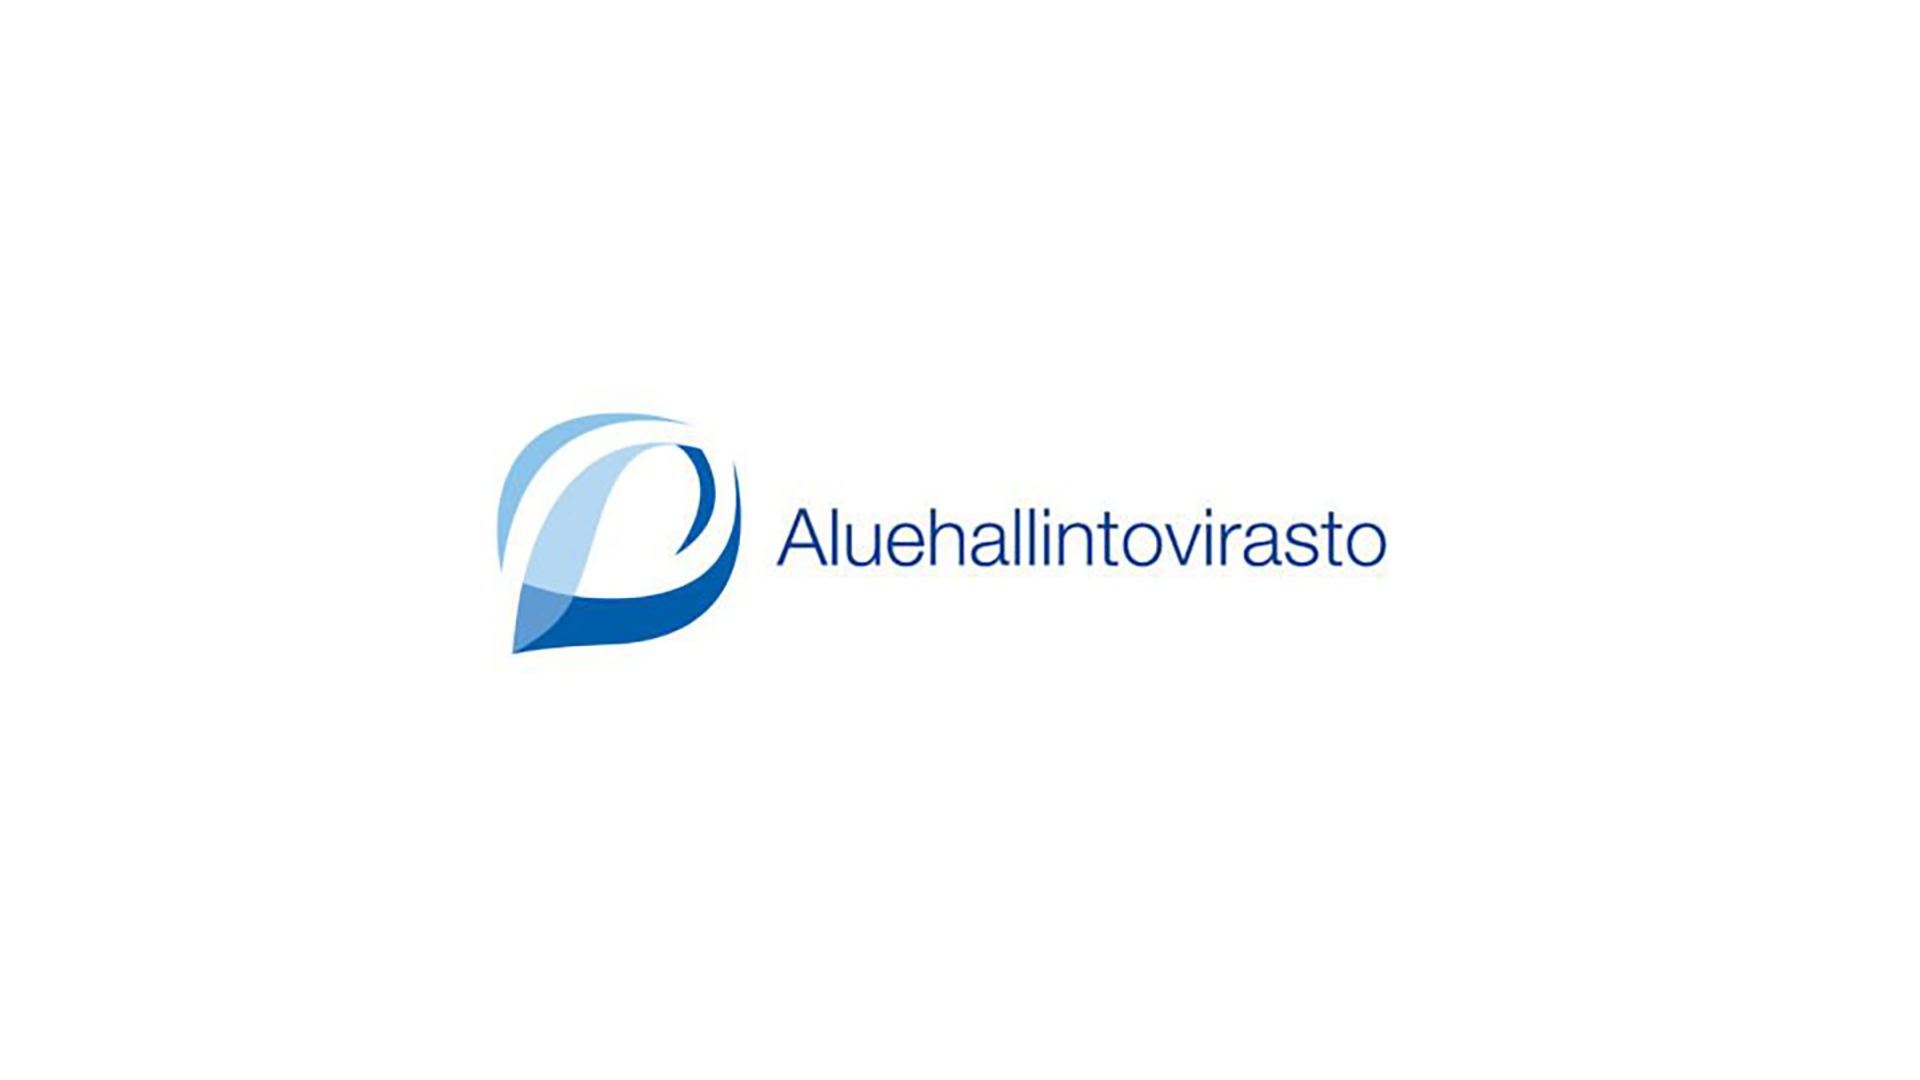 Aluehallintovirasto logo